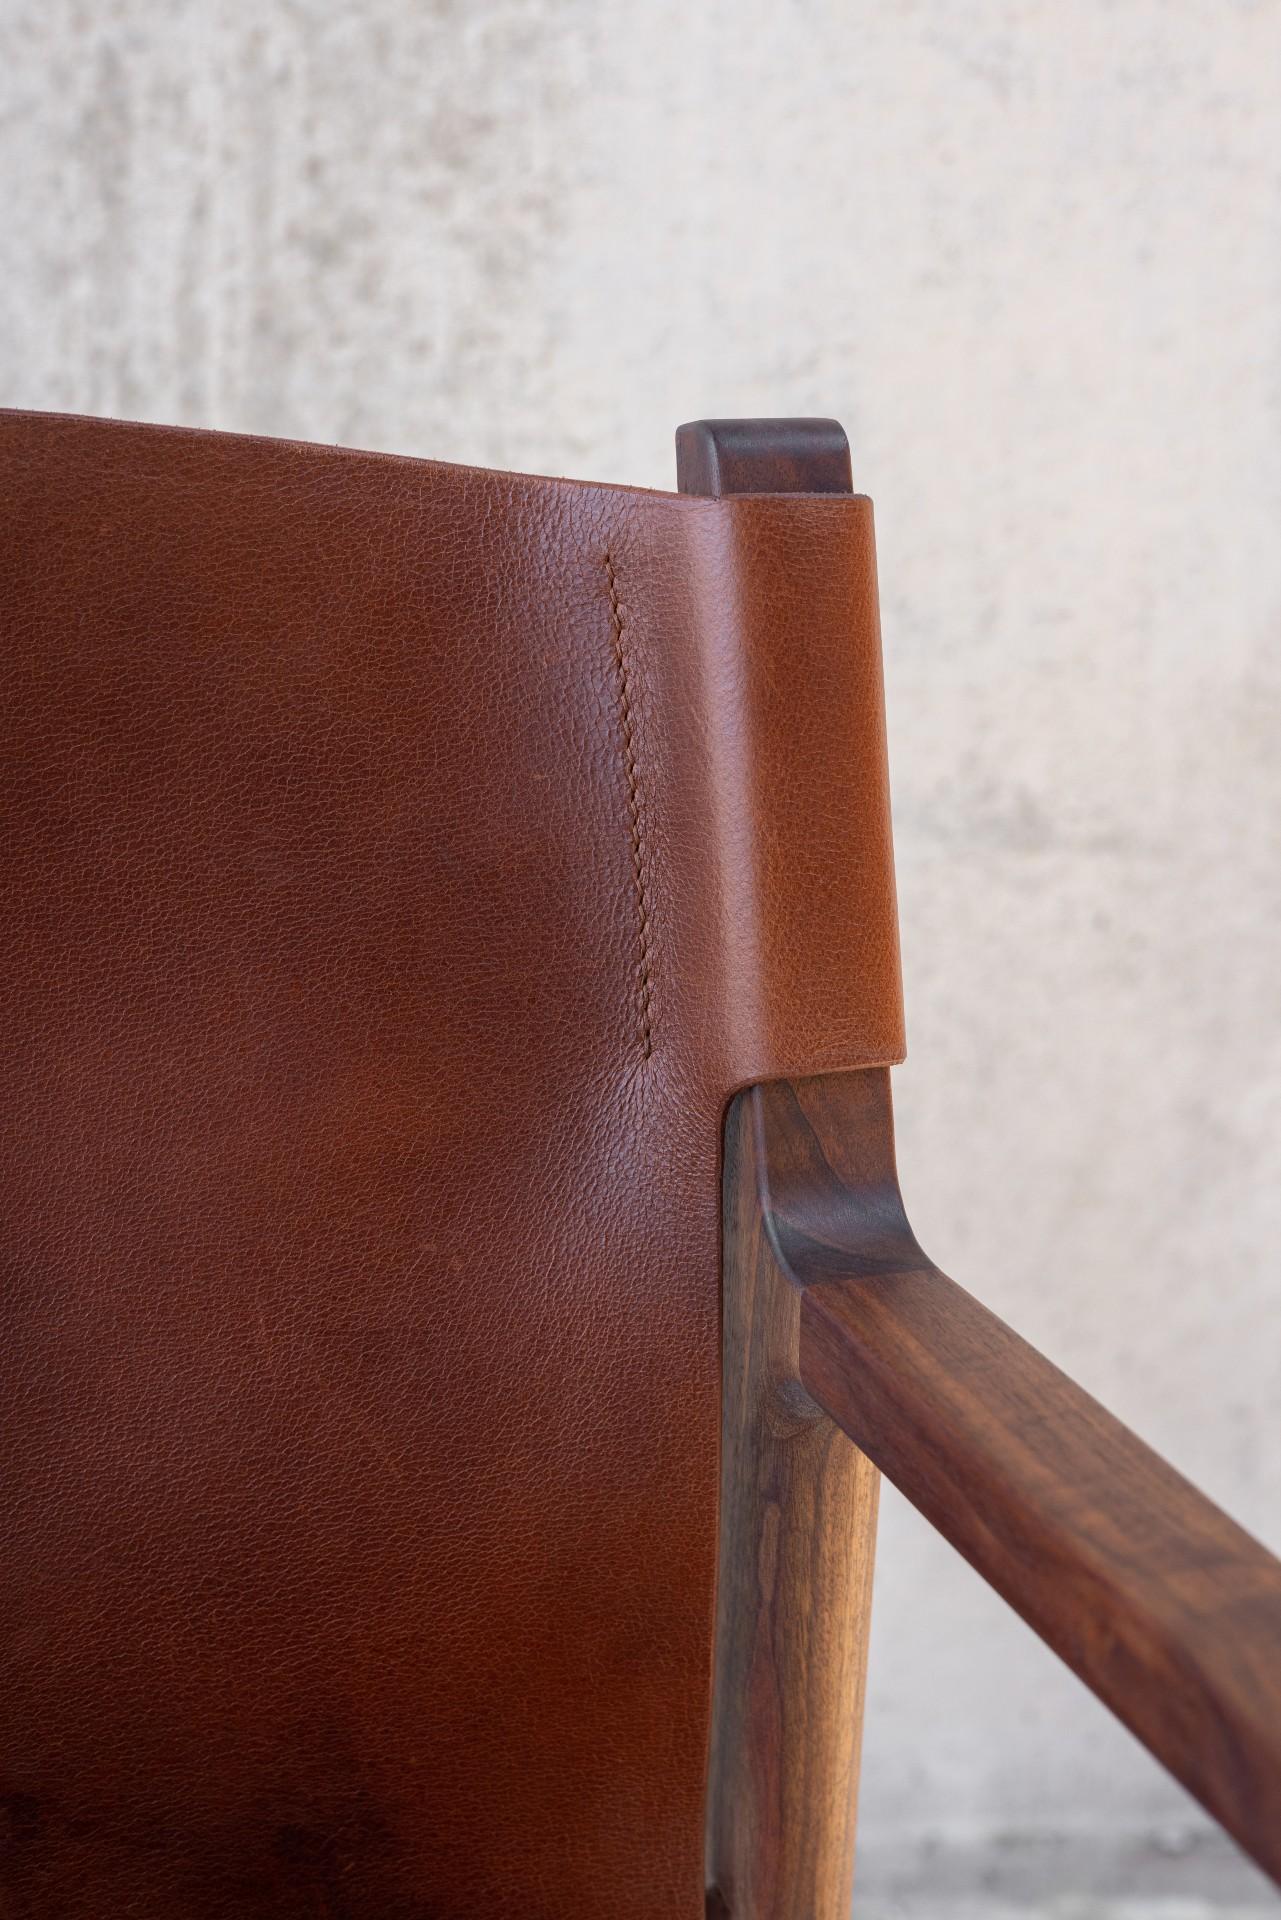 Der Delano Stuhl wurde als bequemer Schreibtischstuhl, Esszimmerstuhl oder Beistellstuhl konzipiert.  Das solide Holzgestell des Stuhls trägt eine lederumwickelte Sitzfläche und Rückenlehne, die so konzipiert ist, dass sie langlebig, aber auch